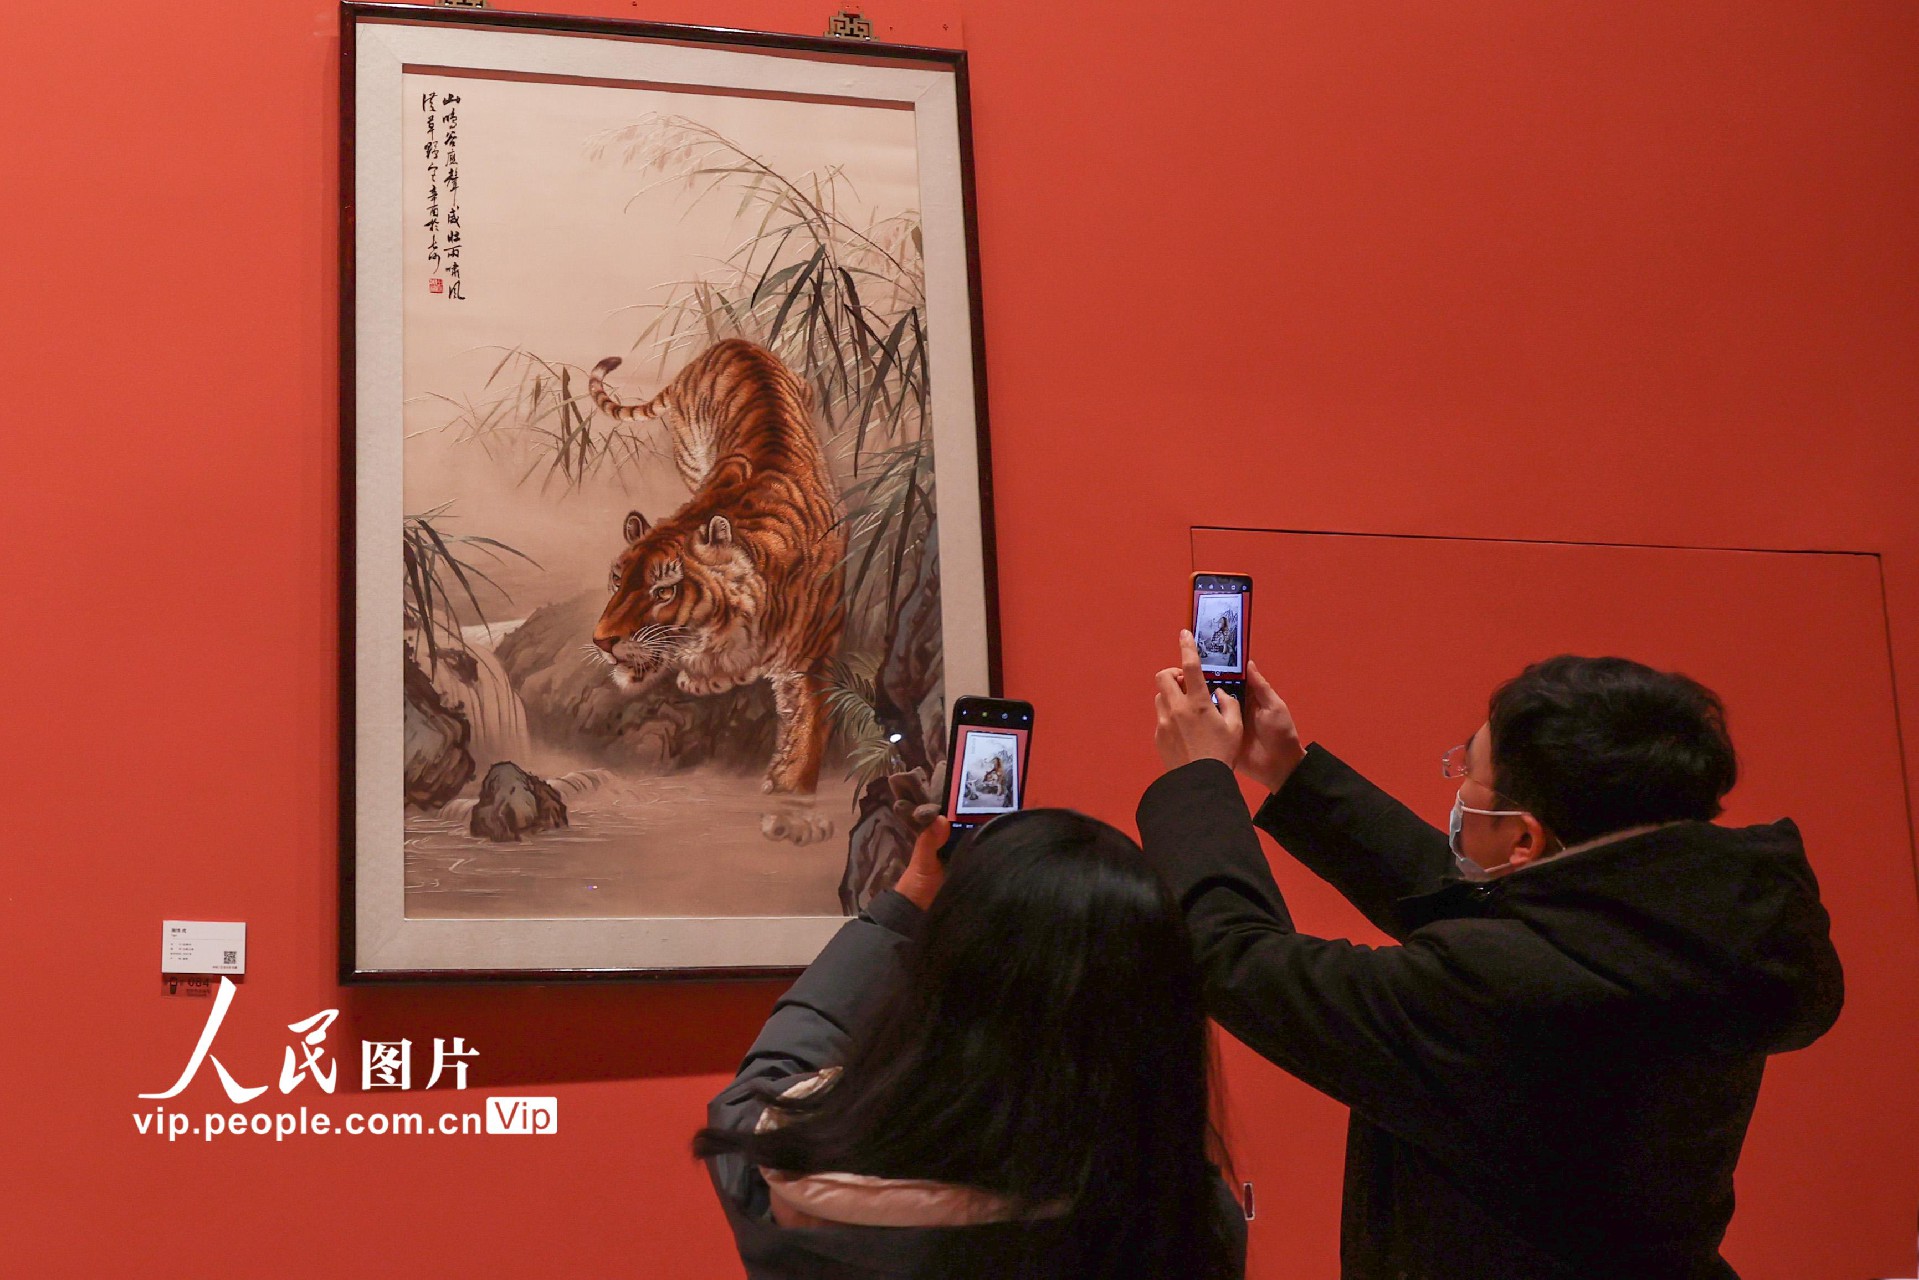 2月9日，观众用手机拍摄湘绣作品“虎”。